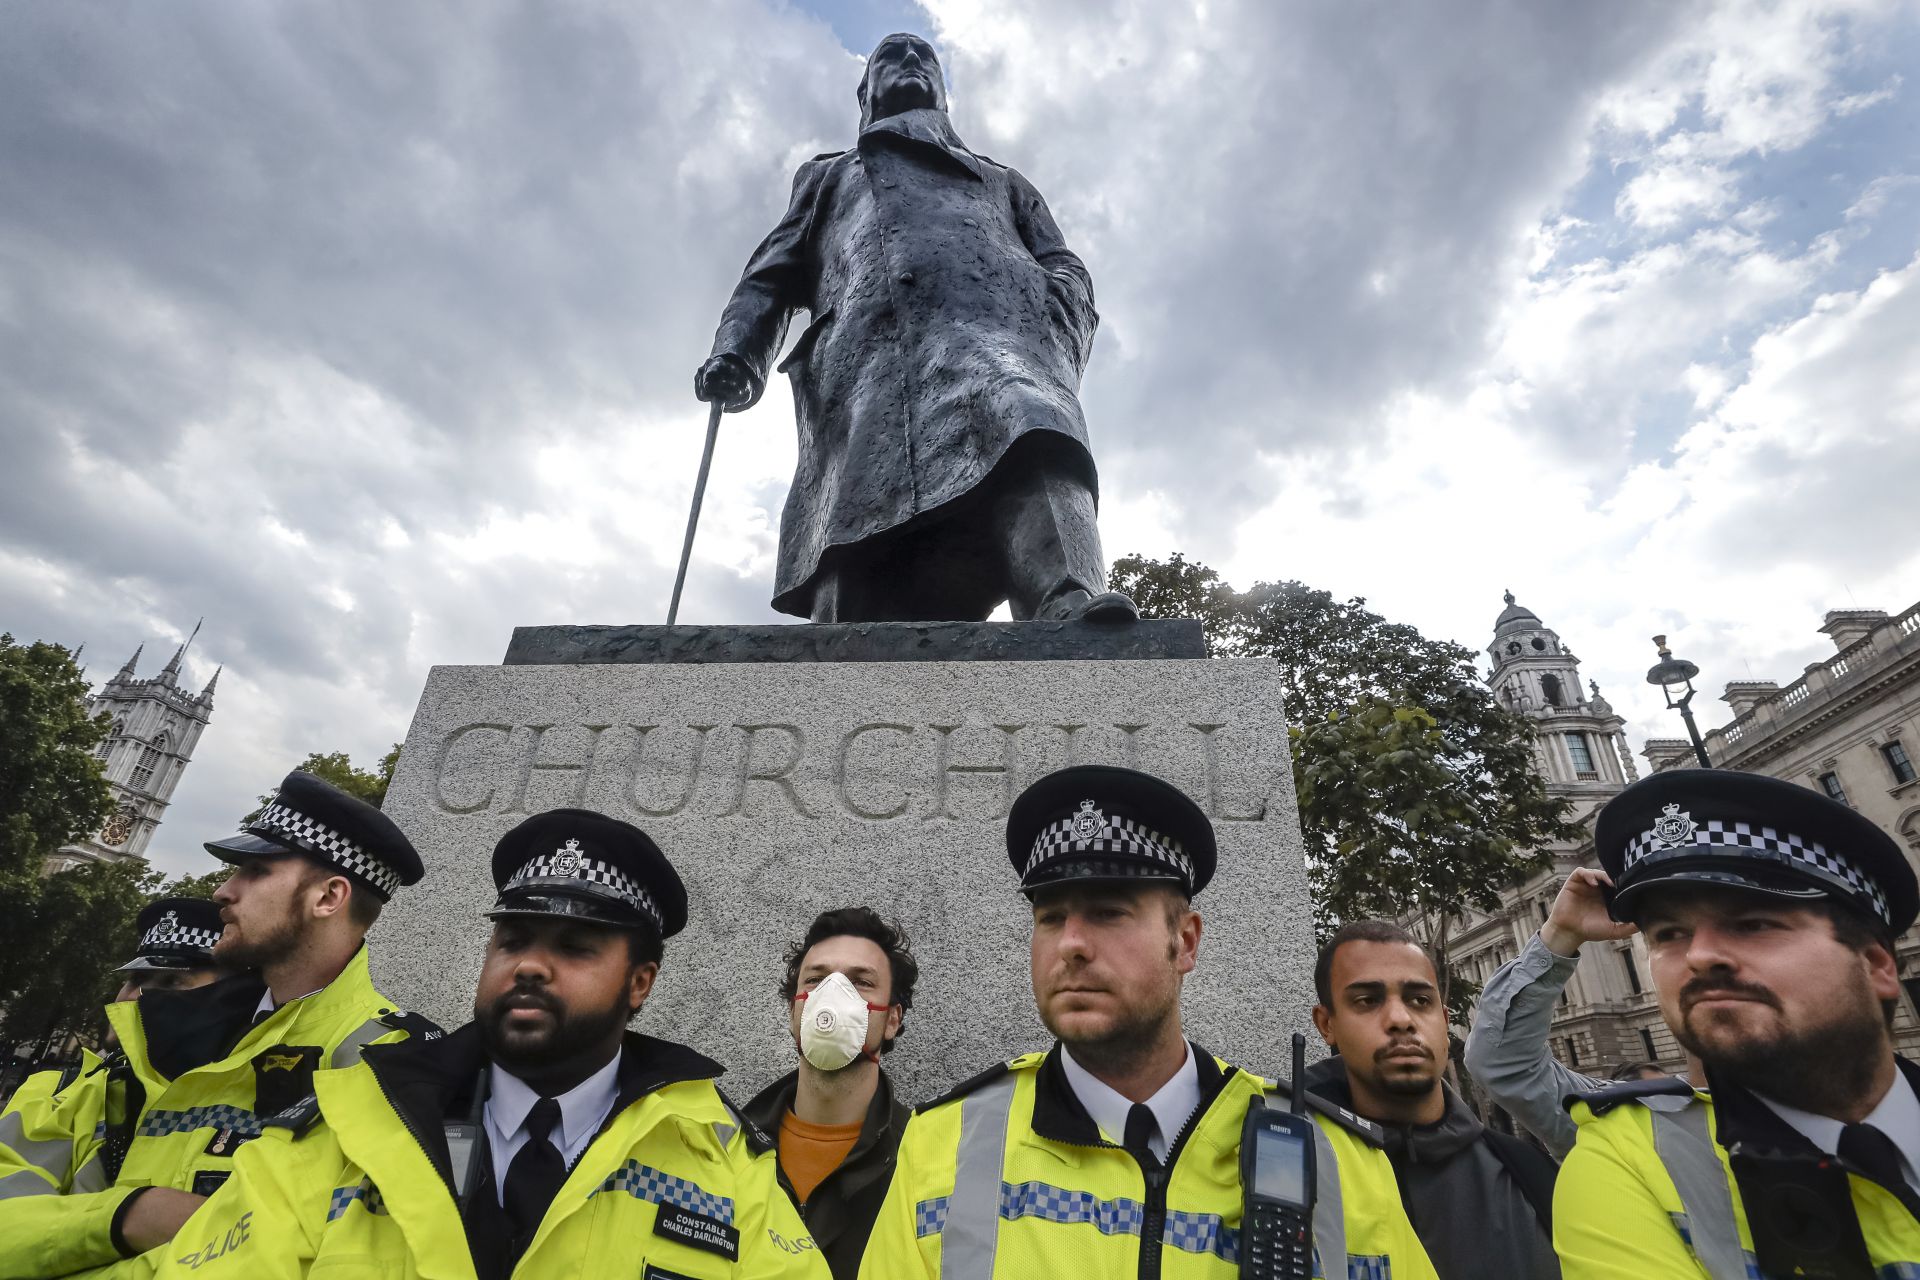 Британски полицаи пазят статуята на Чърчил в Лондон  от протестите  в подкрепа на Black Lives Matter 